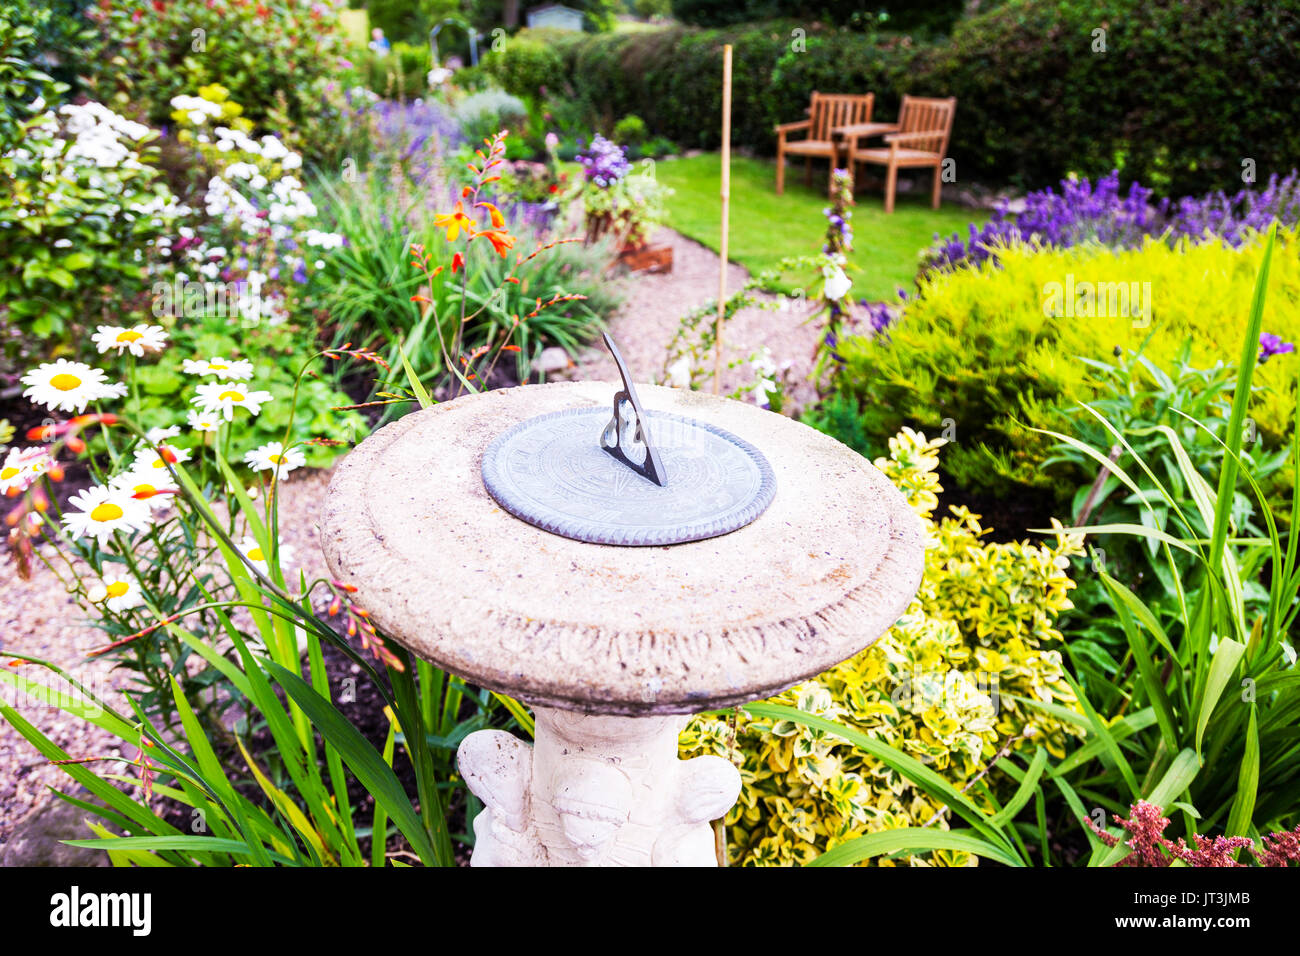 sundial, sun dial, sundial clock, sundial clock in garden, sundial time, sundial garden, sundial garden clock, sundials, UK, England, UK sundials Stock Photo